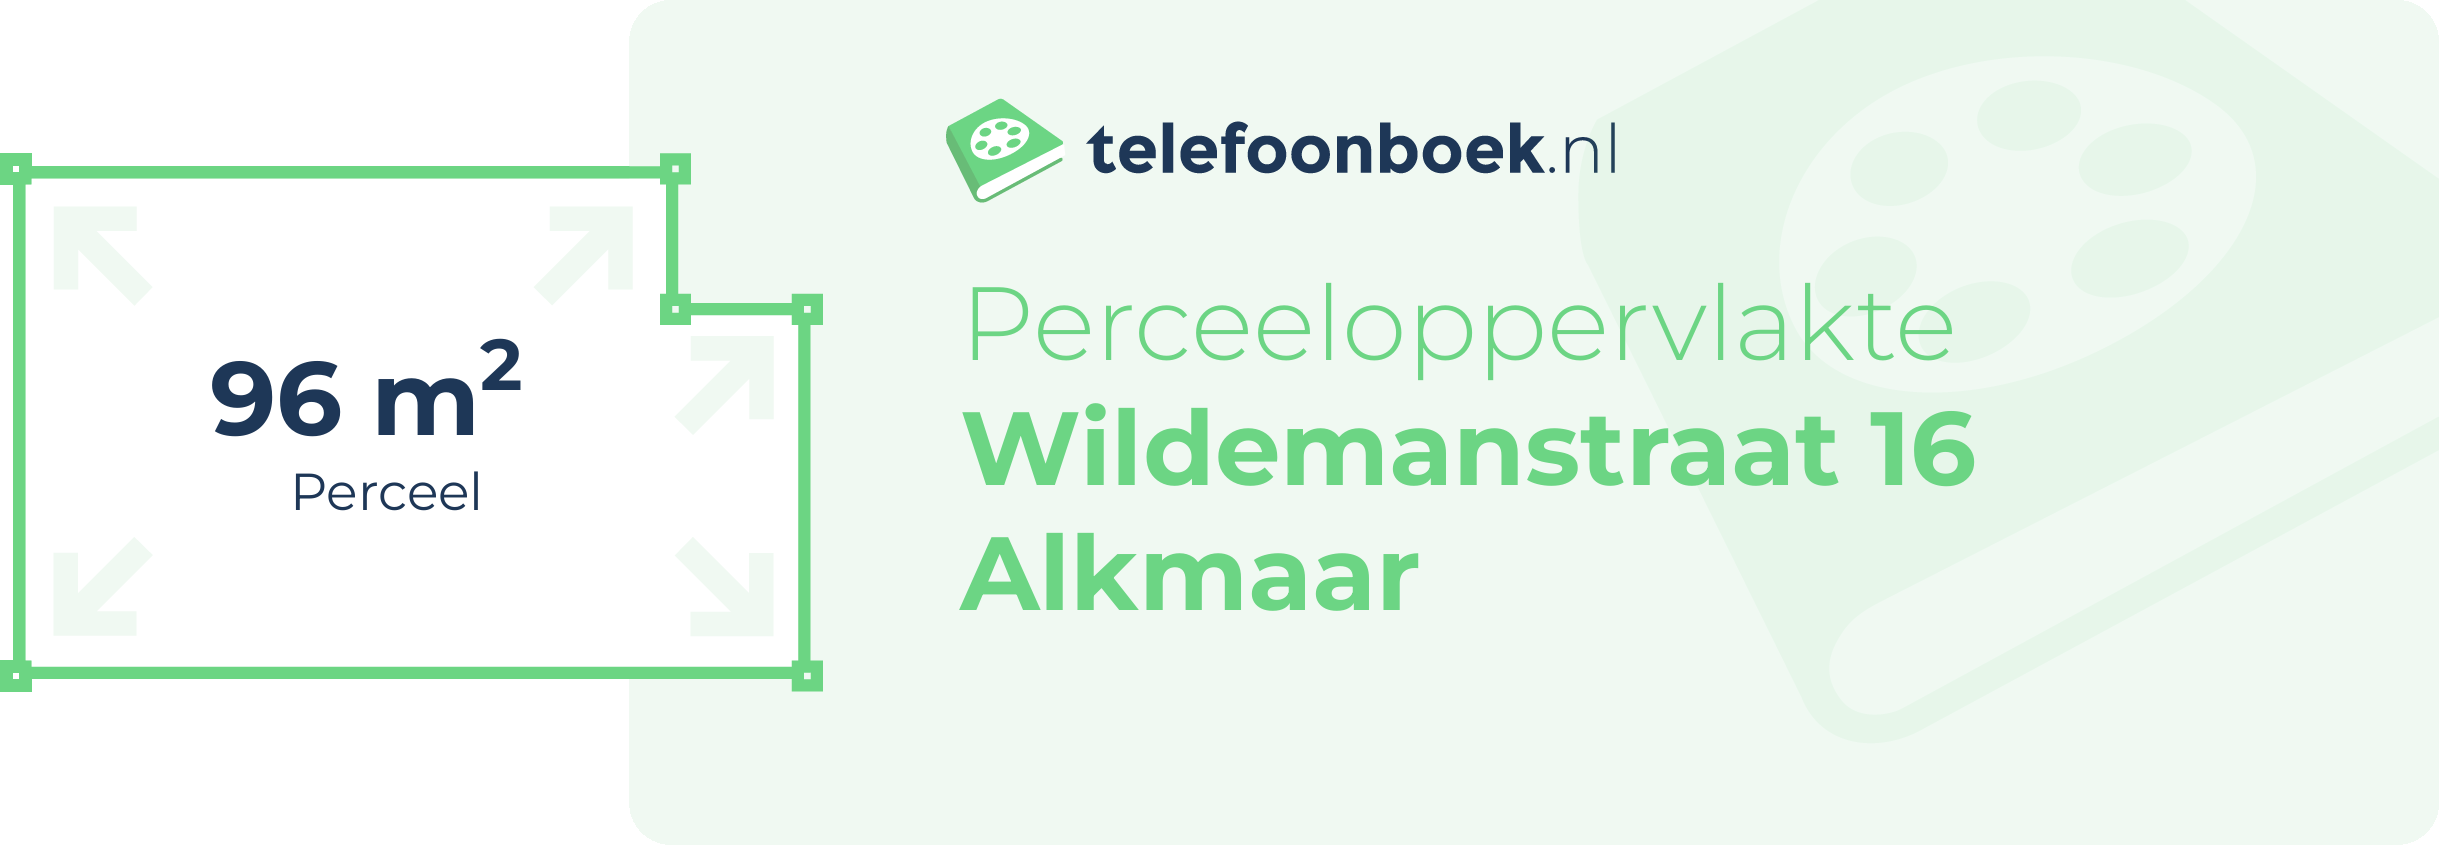 Perceeloppervlakte Wildemanstraat 16 Alkmaar